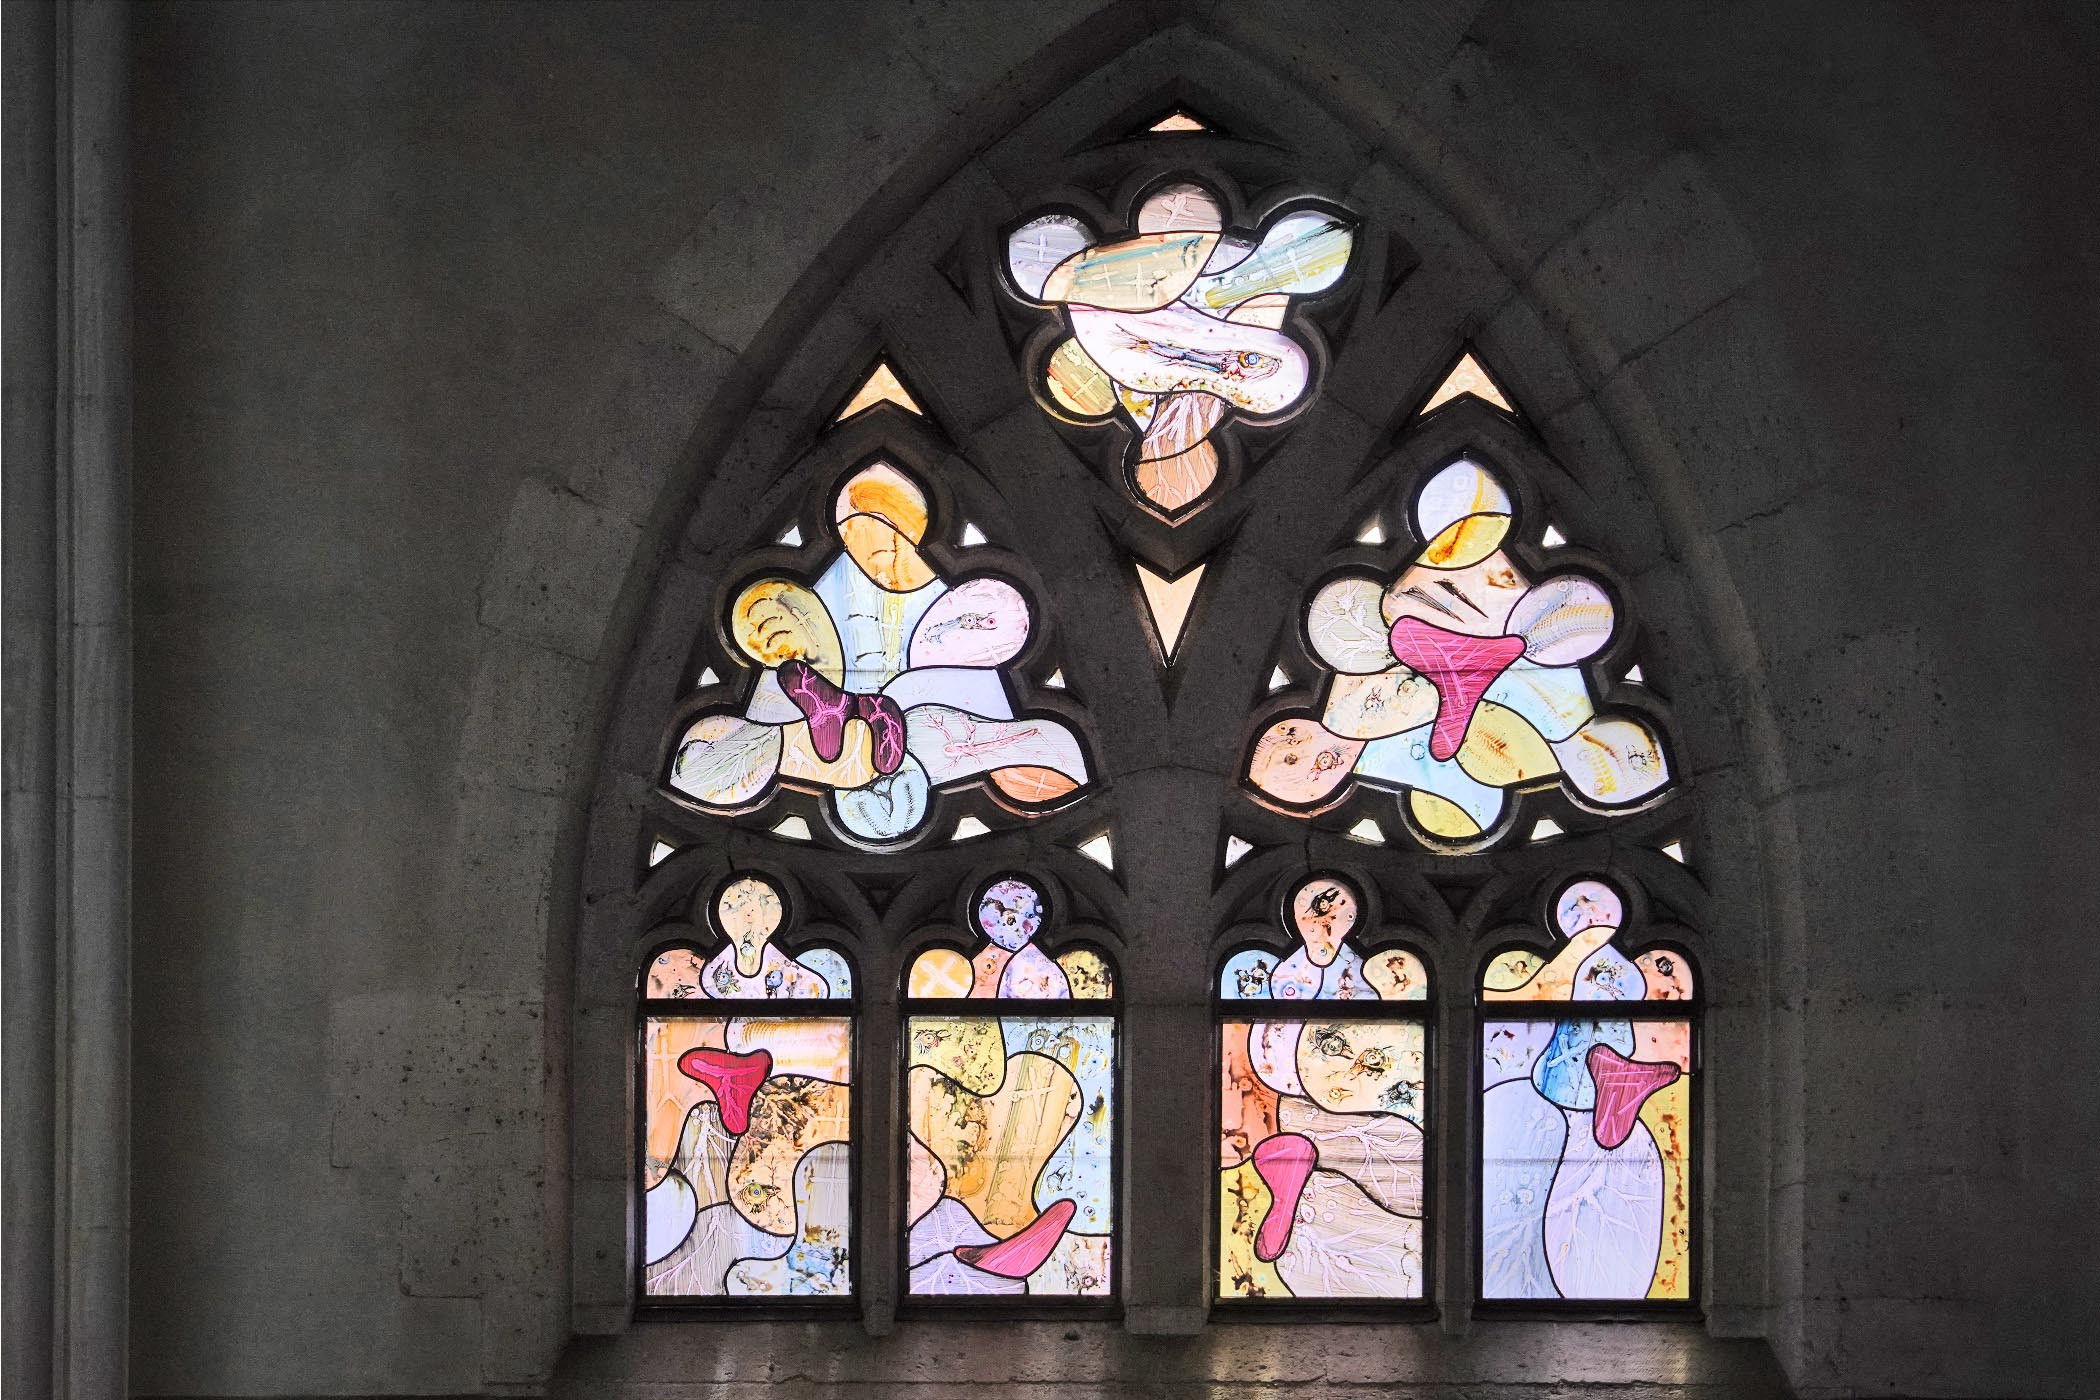 Glas-in-loodraam 'Stigmata' van Marc Mulders in de Stevenskerk